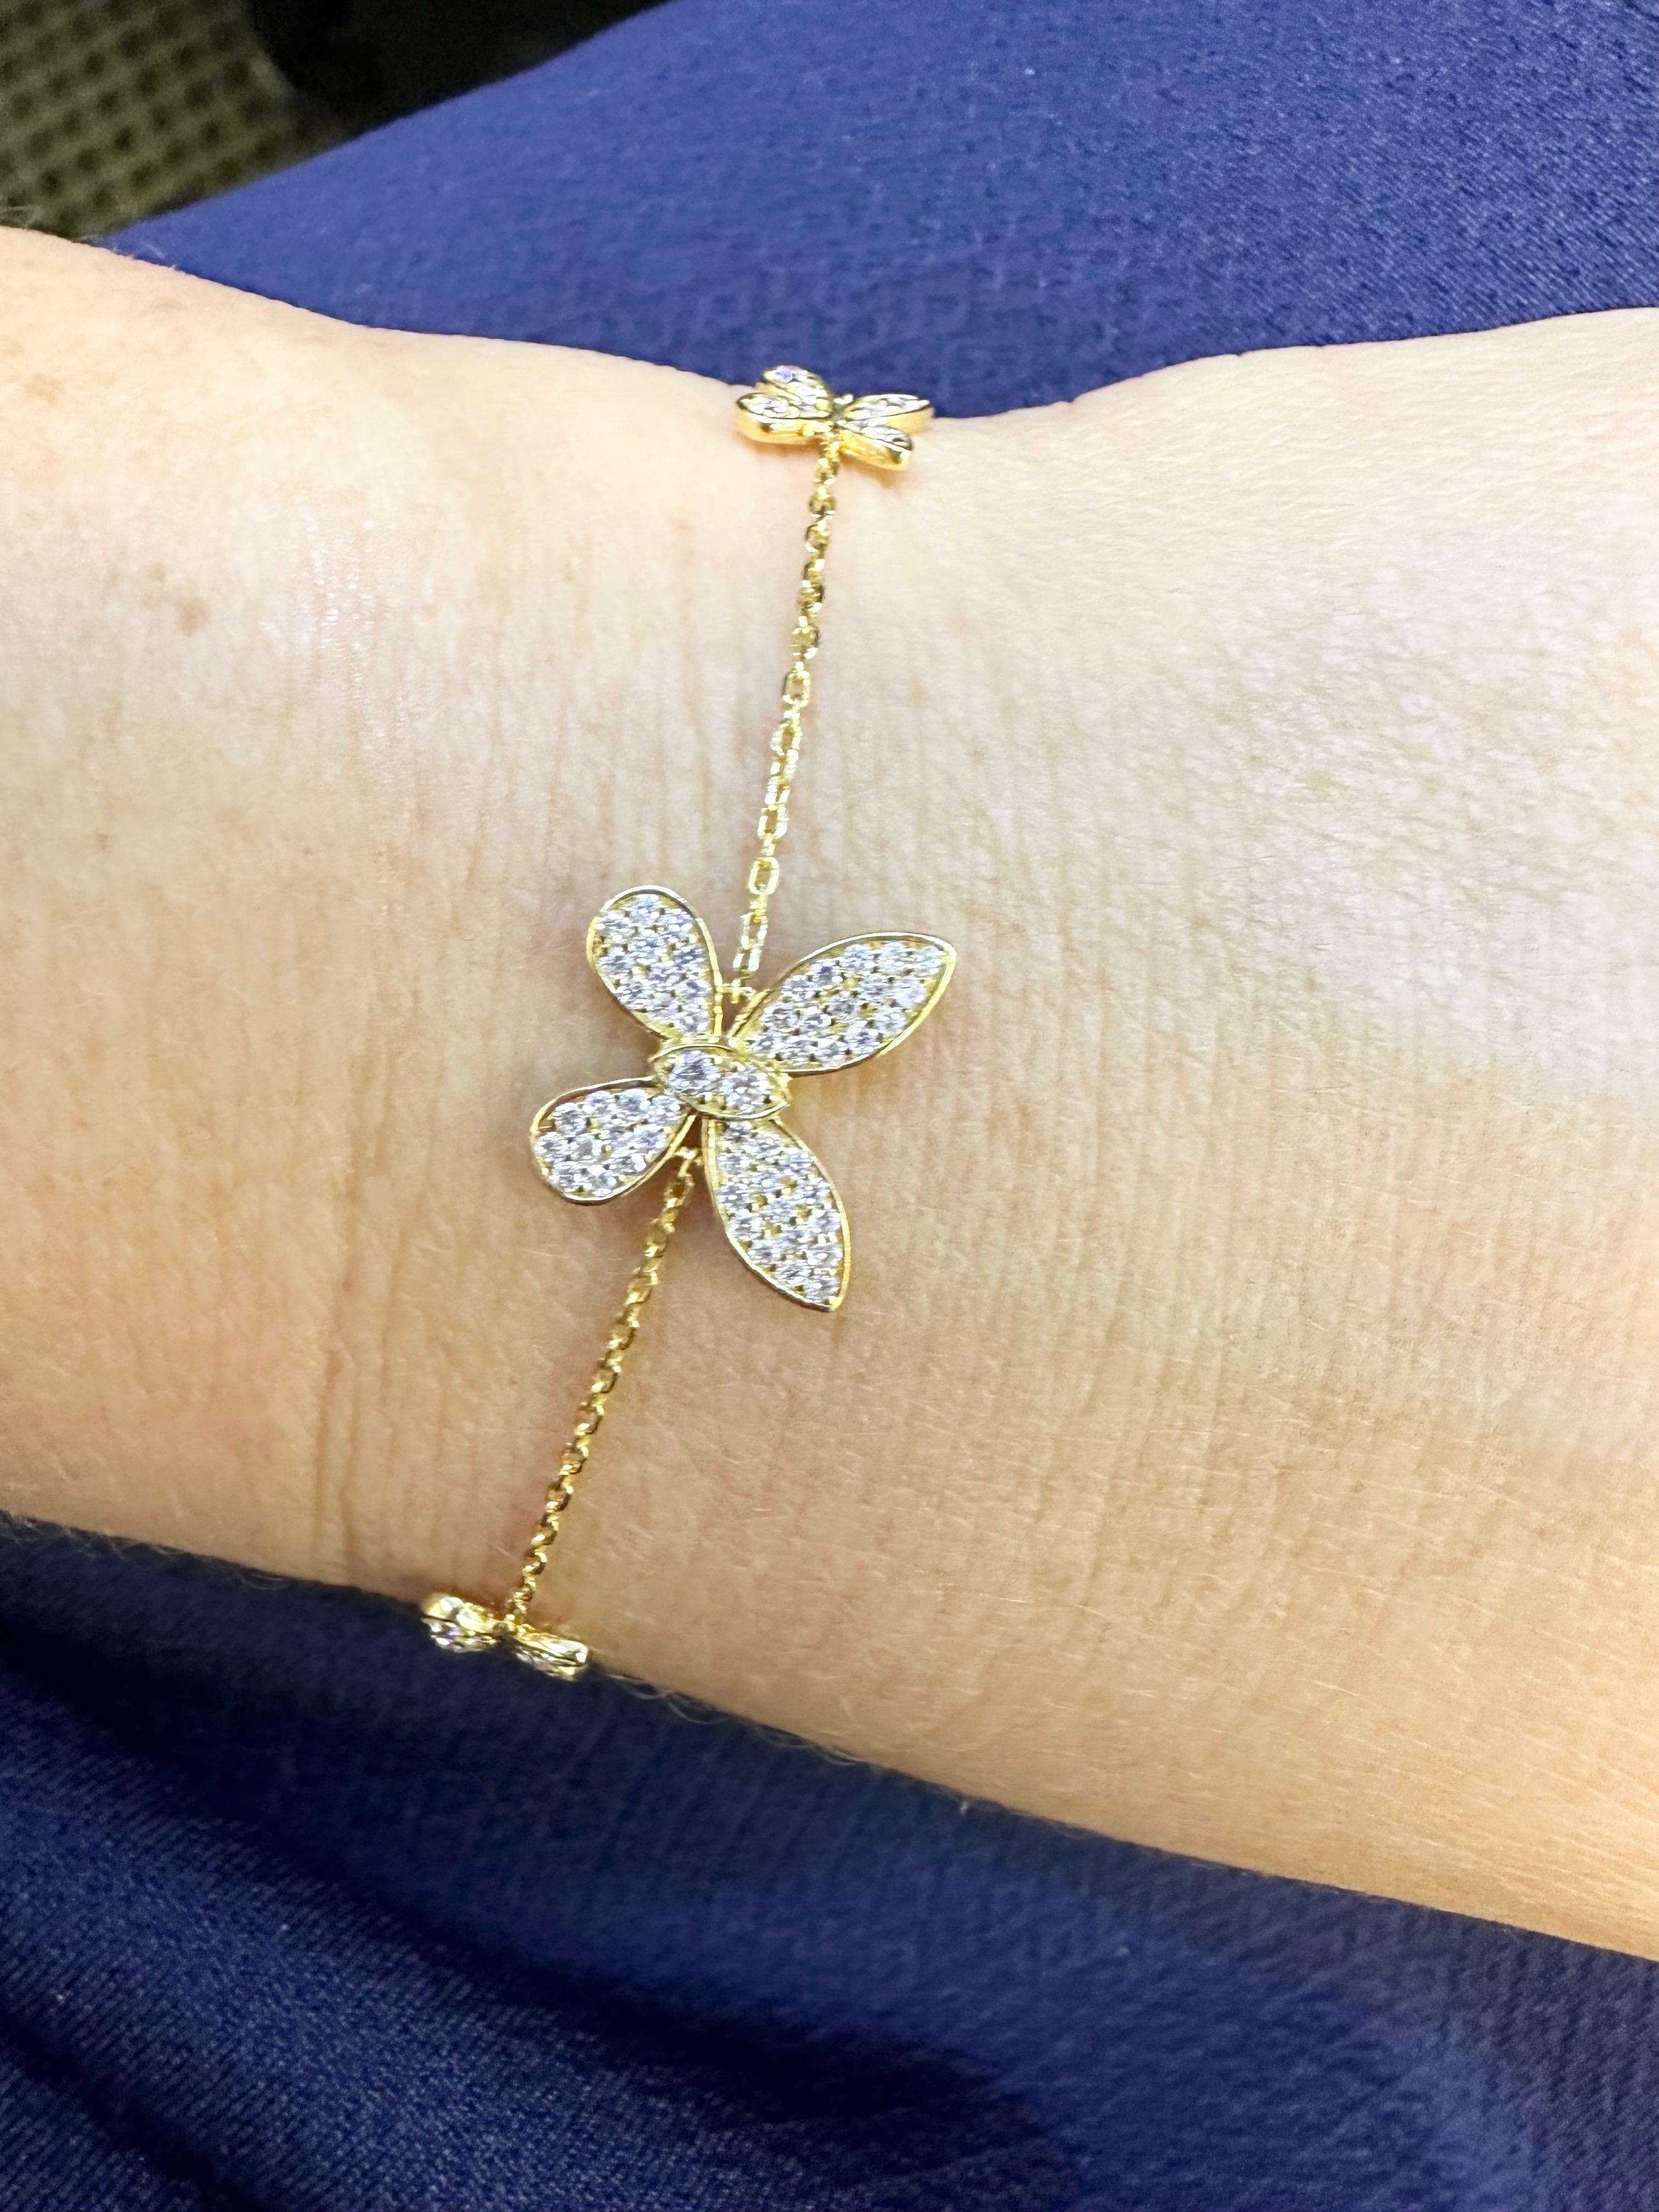 14KT Gelbgold Diamant-Armband mit Schmetterlingen, ausgezeichnete Handwerkskunst mit 0,60 Karat Diamanten Si Klarheit und G Farbe!
Das Echtheitszertifikat wird beim Kauf mitgeliefert!

ÜBER UNS
Wir sind ein familiengeführtes Unternehmen. Unser